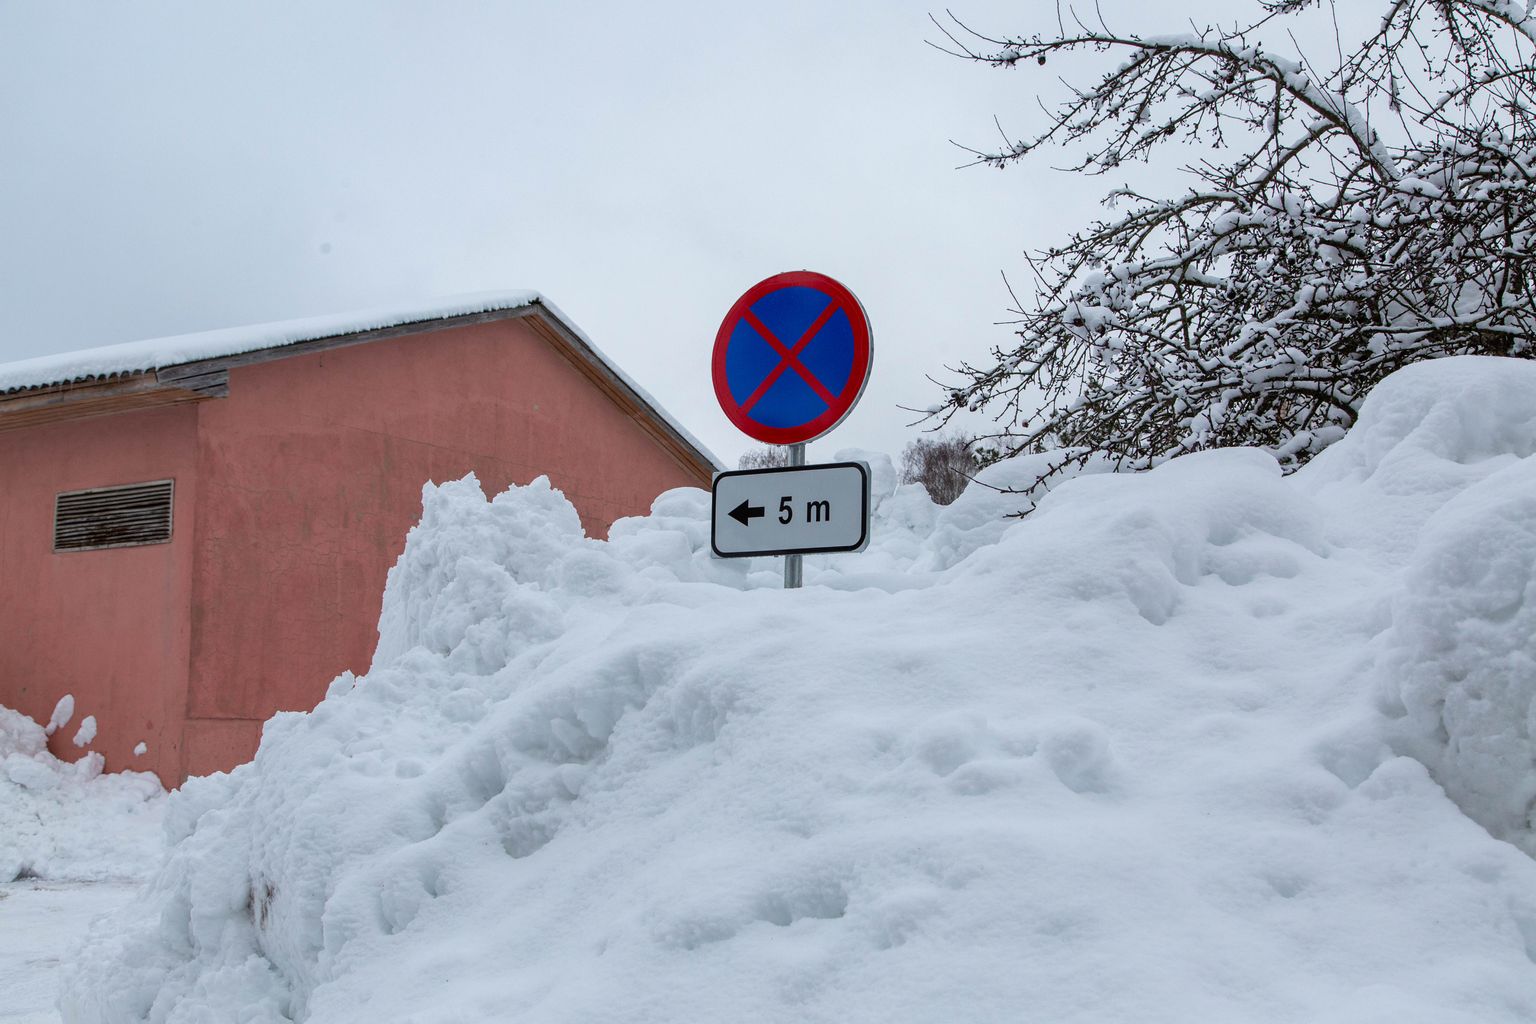 Talvepealinn Otepää lume puuduse üle kurta ei saa. Lumehunnikud on kohati enam kui 3 meetrit kõrged ning tänavatel liiklemine piiratud nähtavuse ja ruumipuuduse tõttu raskendatud.